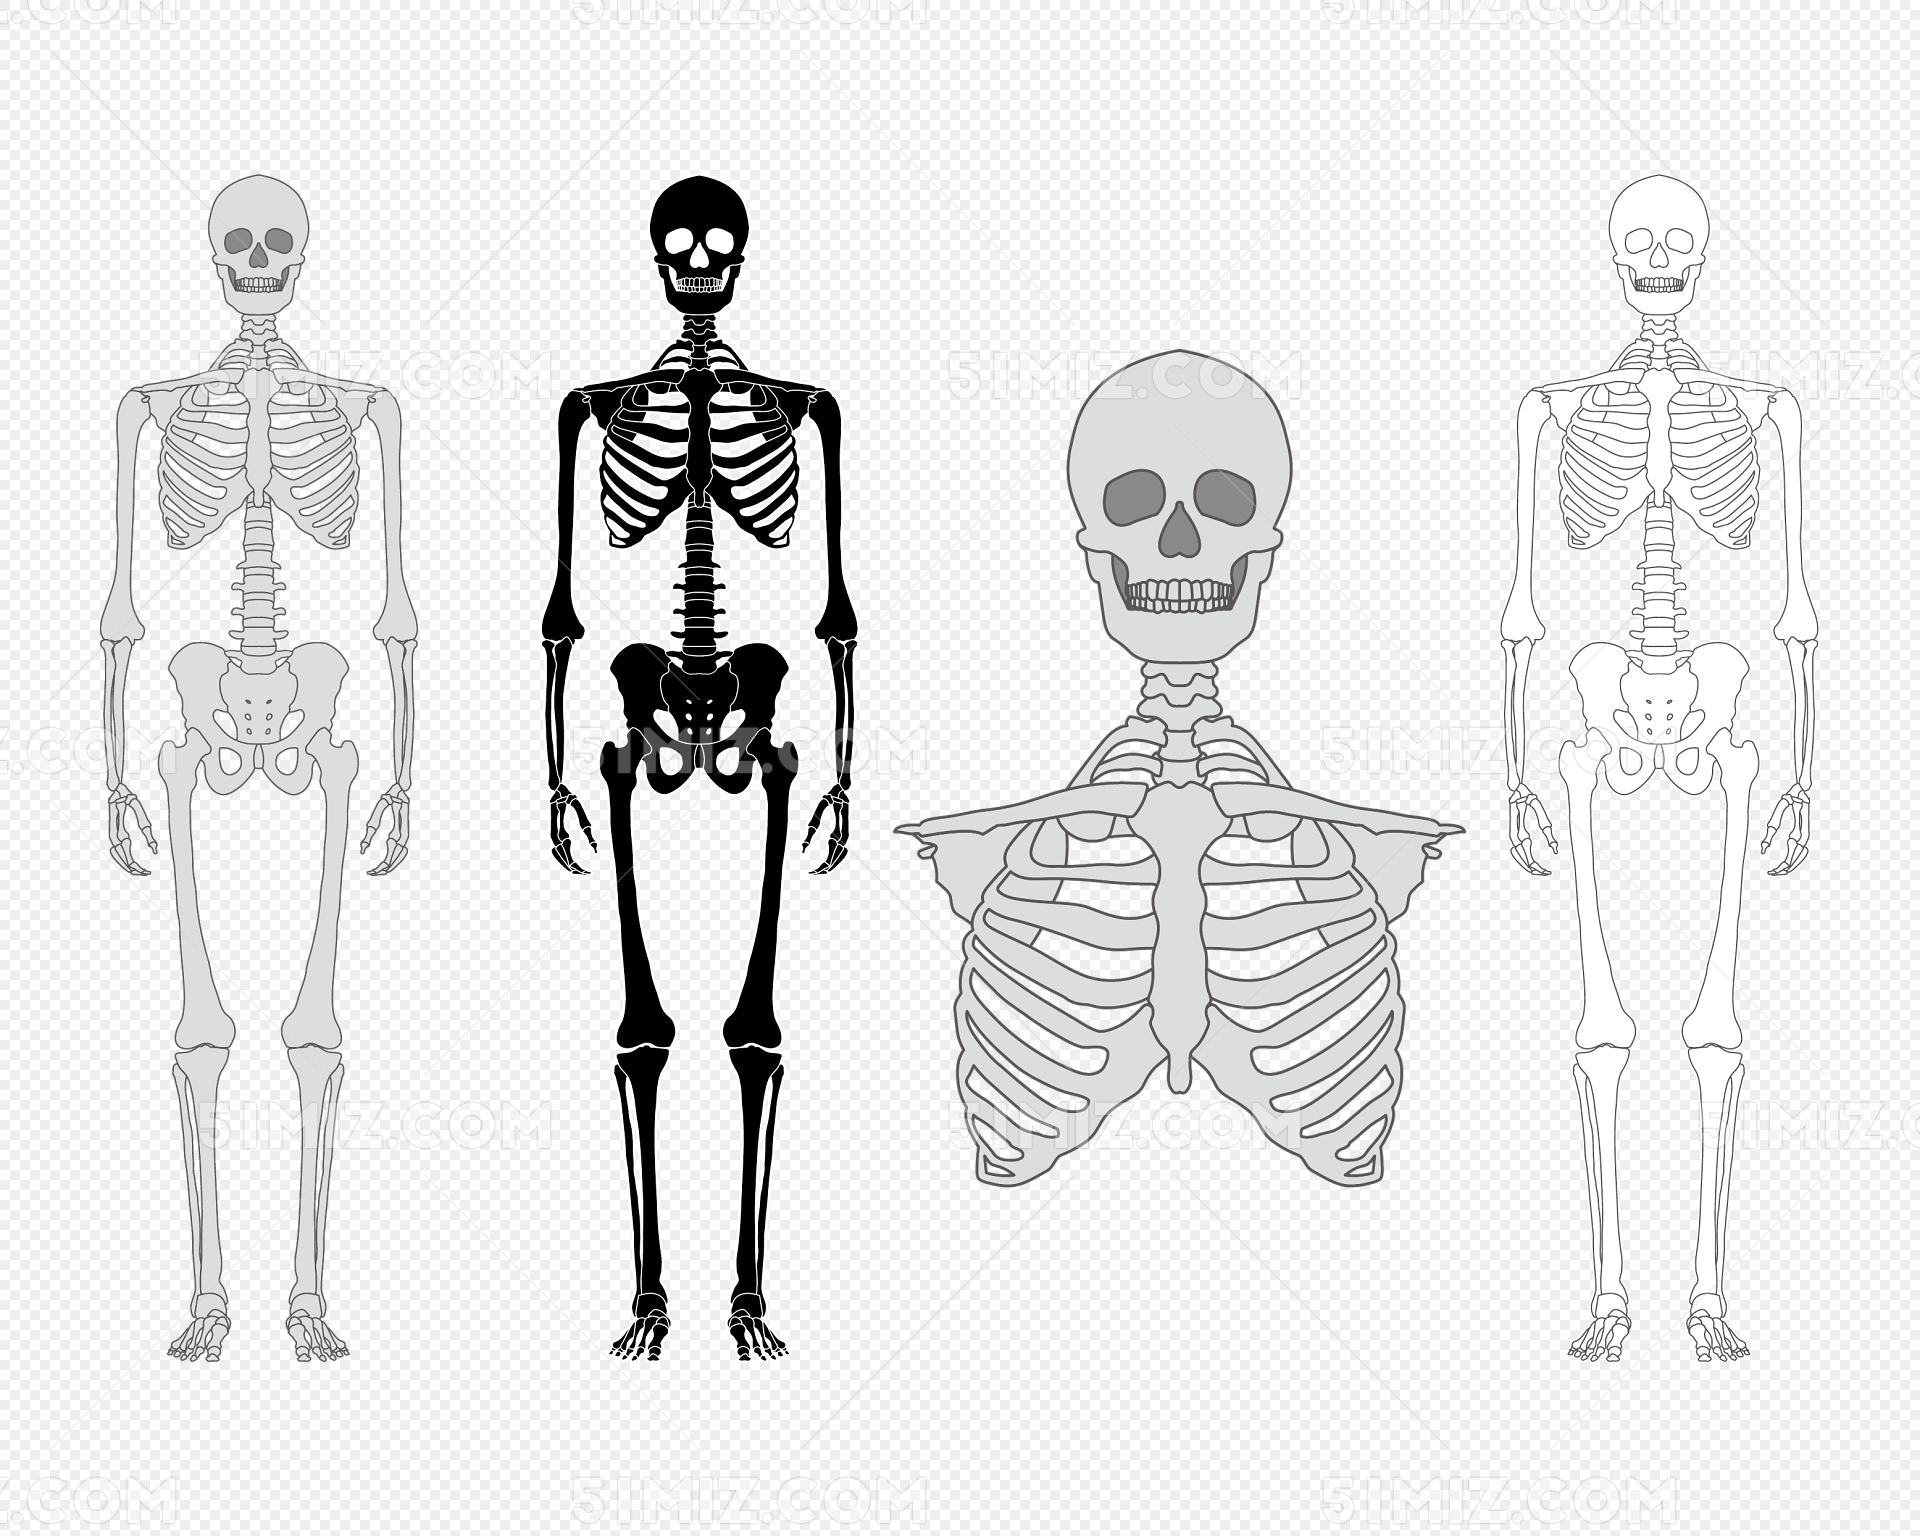 人体骨骼图片素材免费下载 - 觅知网